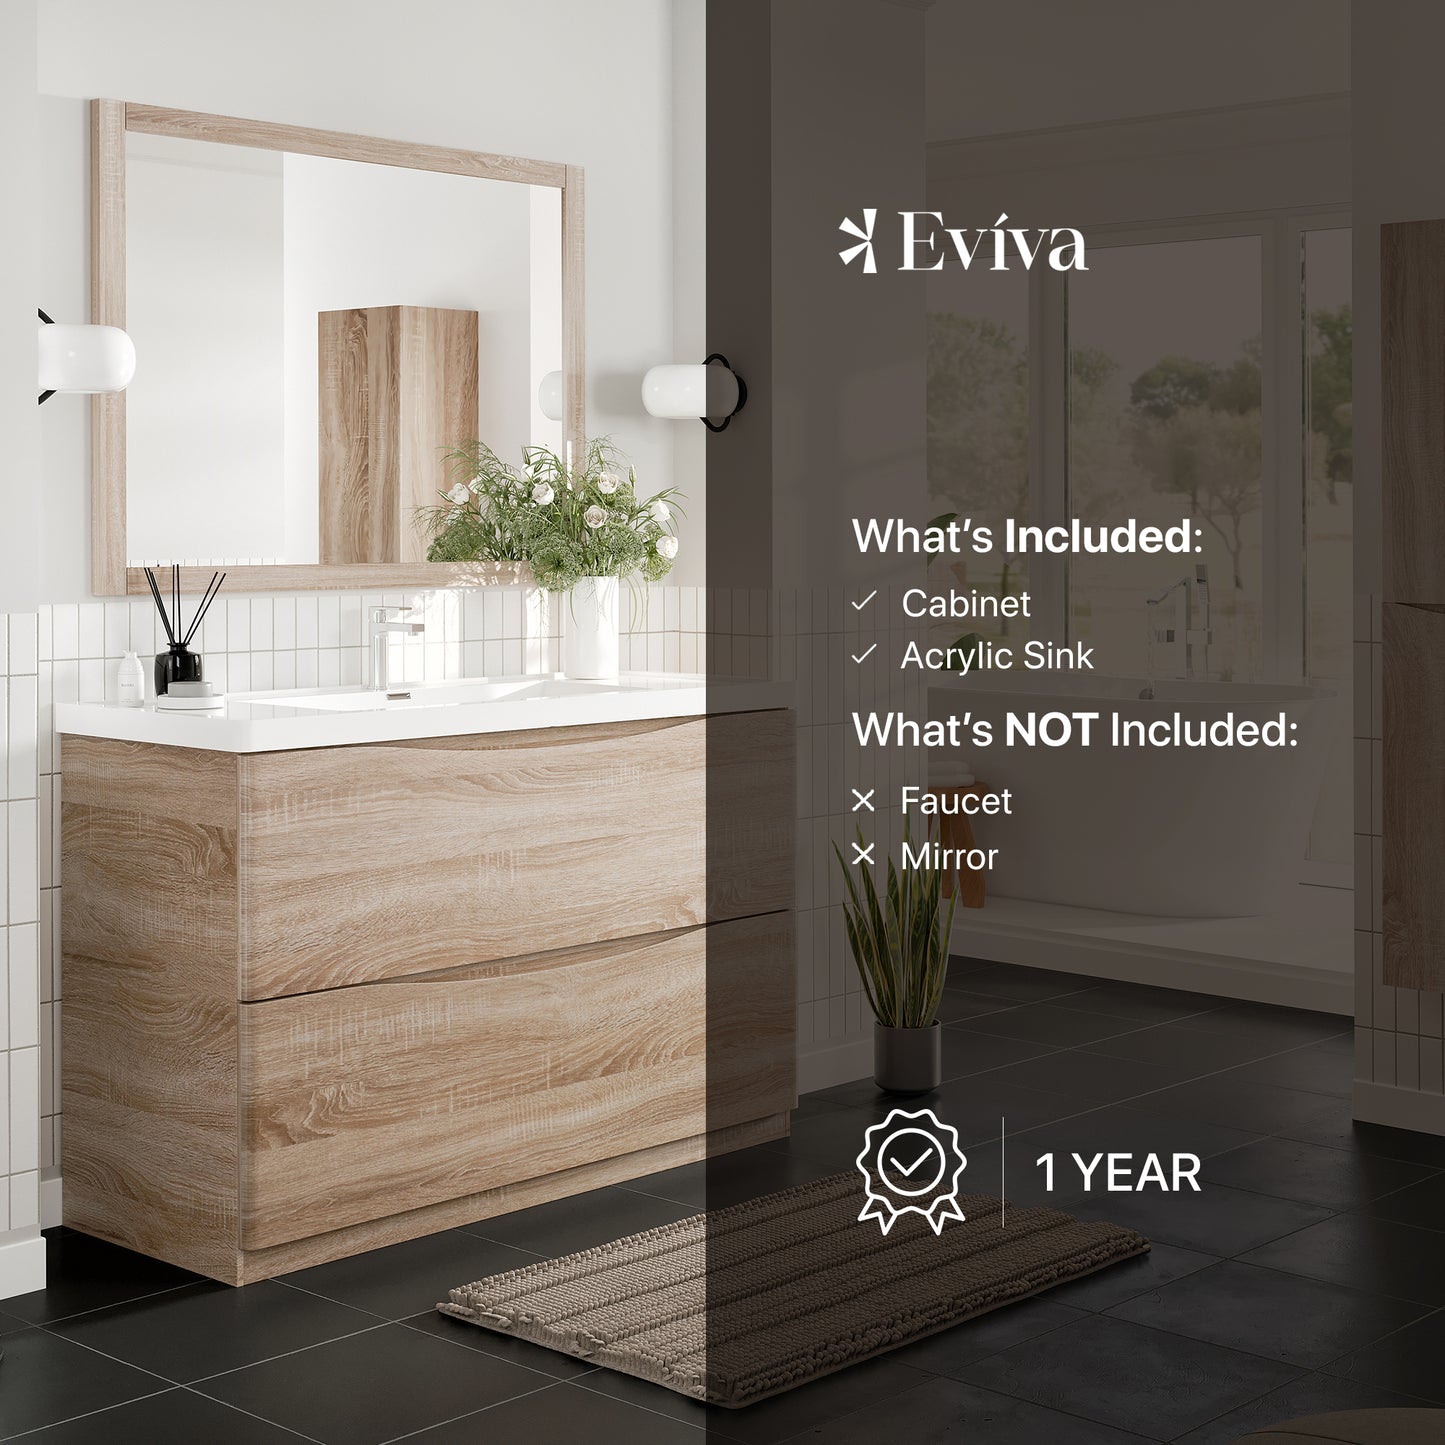 Eviva Smile 48" White Oak Freestanding Modern Bathroom Vanity w/ White Integrated Top